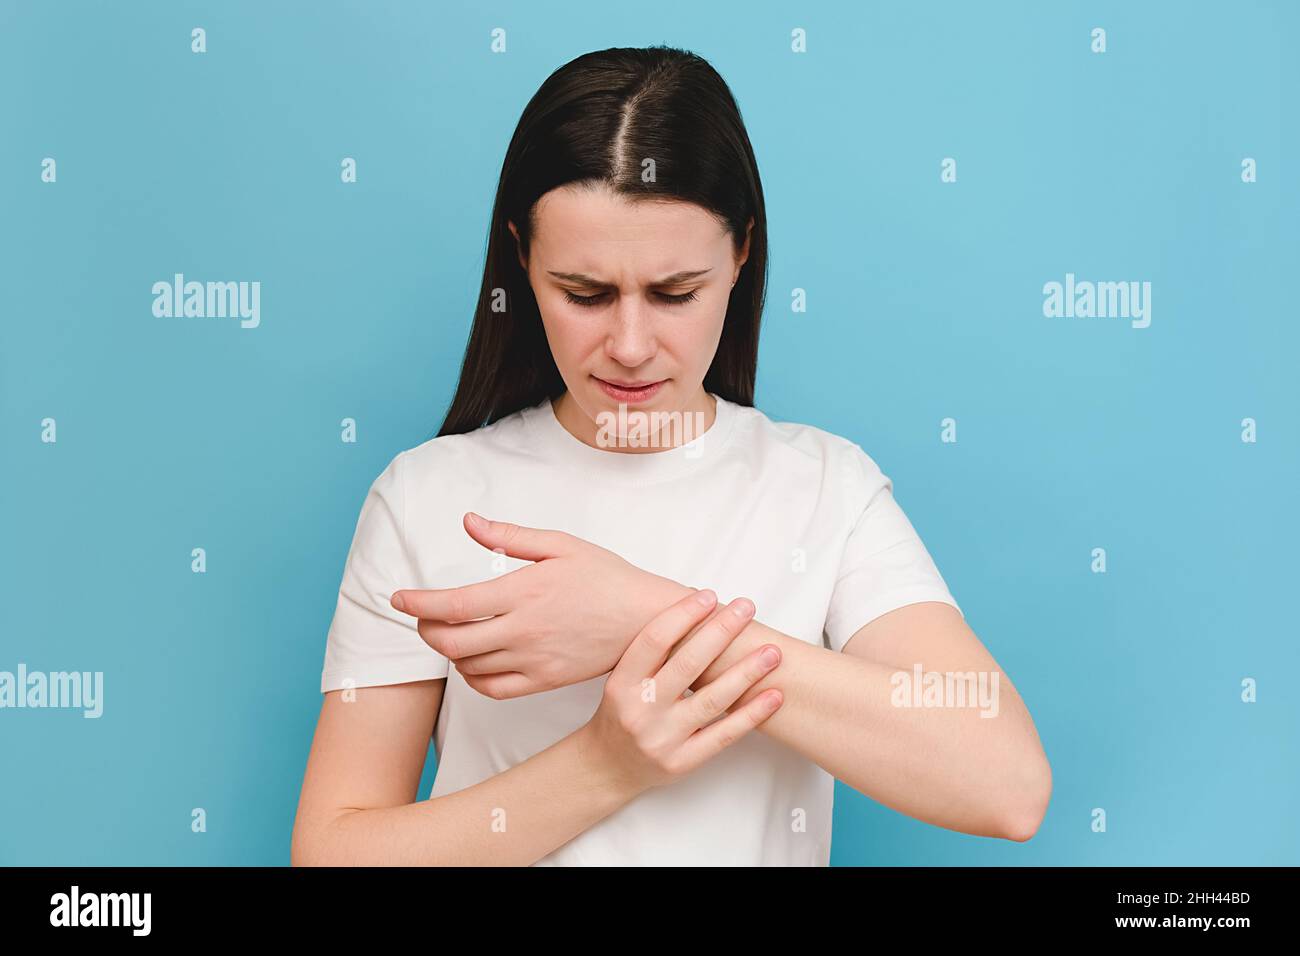 Ritratto di stanco giovane donna braccia che tiene il suo polso doloroso causato da un lavoro prolungato, isolato su sfondo blu. Sindrome del tunnel carpale, artrite Foto Stock